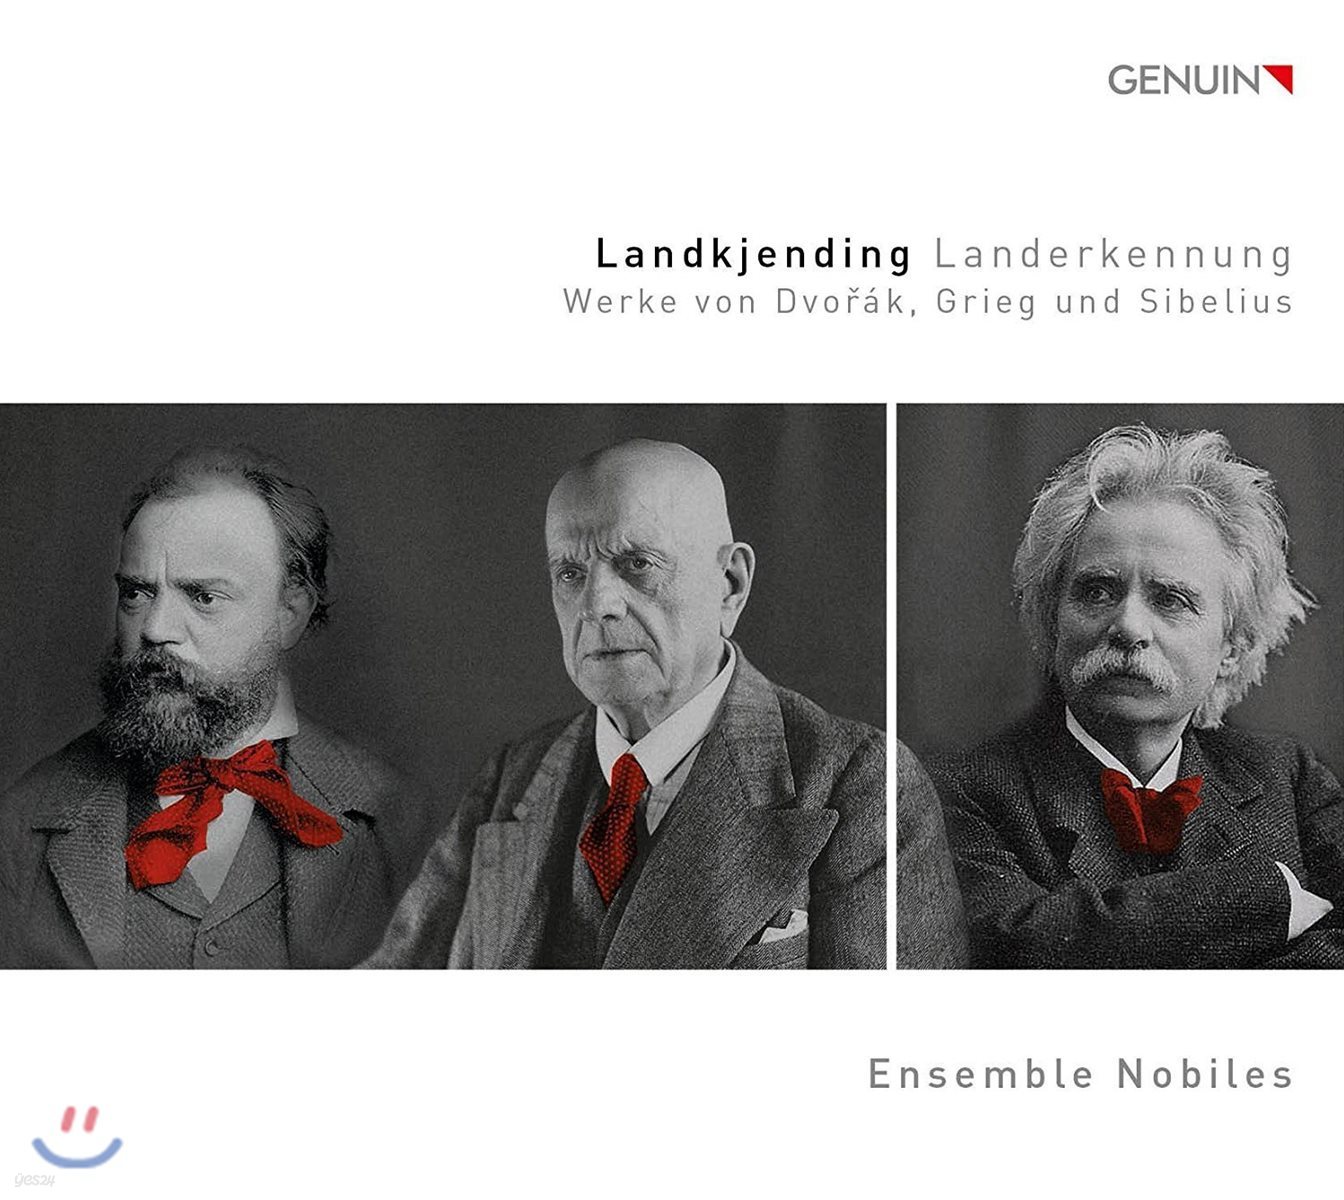 박성아 / Ensemble Nobiles 드보르작 / 그리그 / 시벨리우스의 작품집 - 노빌레스 앙상블 (Landkjending 'Recognition of Land': Works by Dvorak, Grieg and Sibelius)